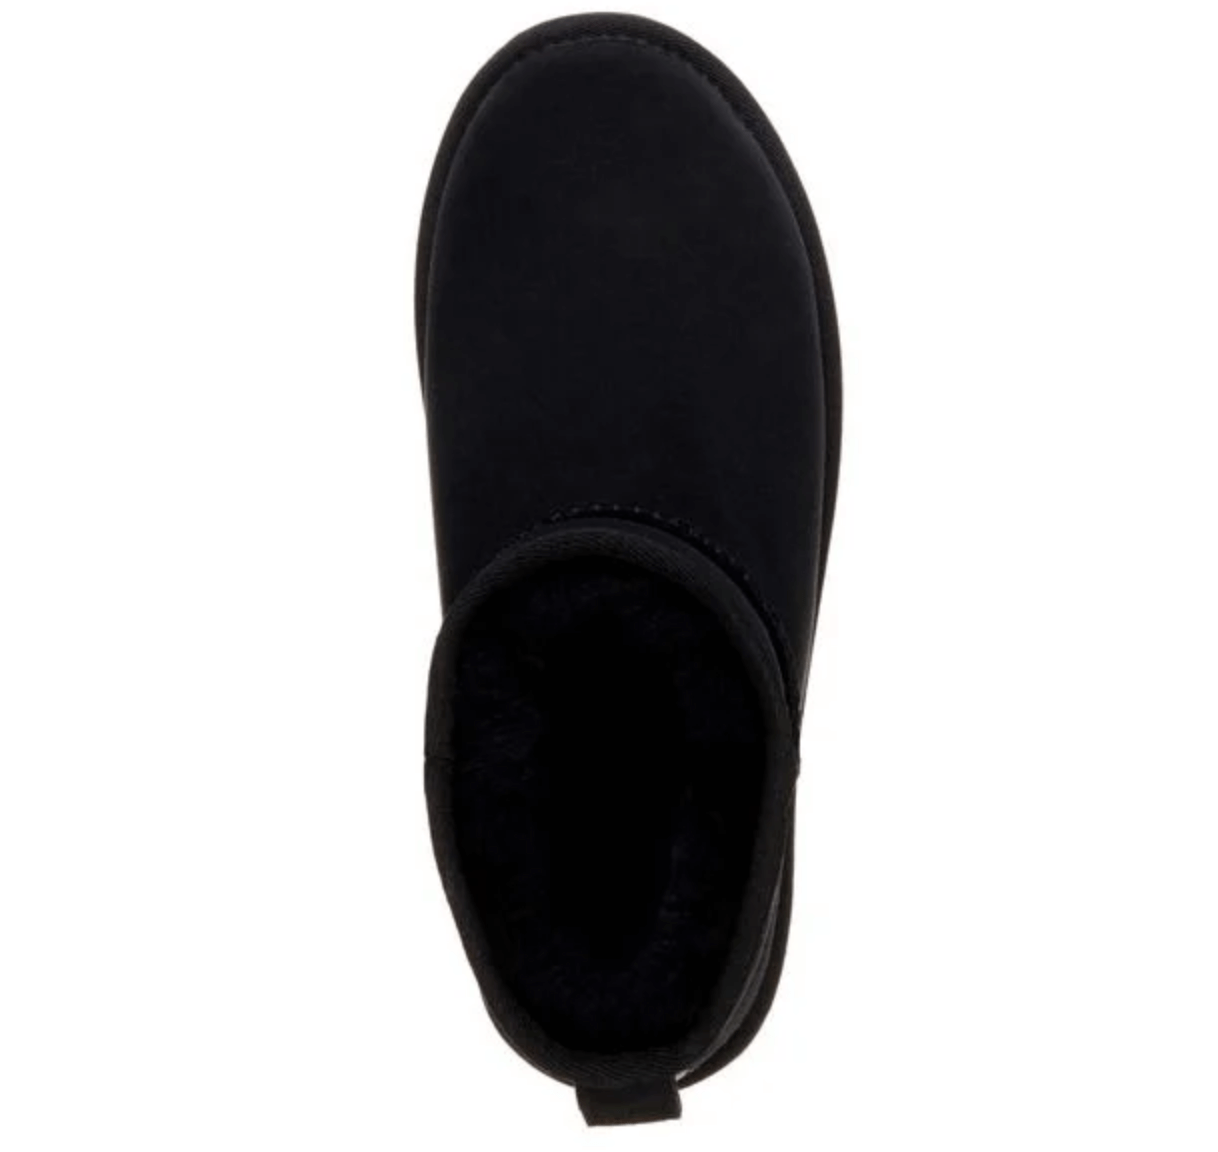 EMU Australia - Stinger Micro Black Boots